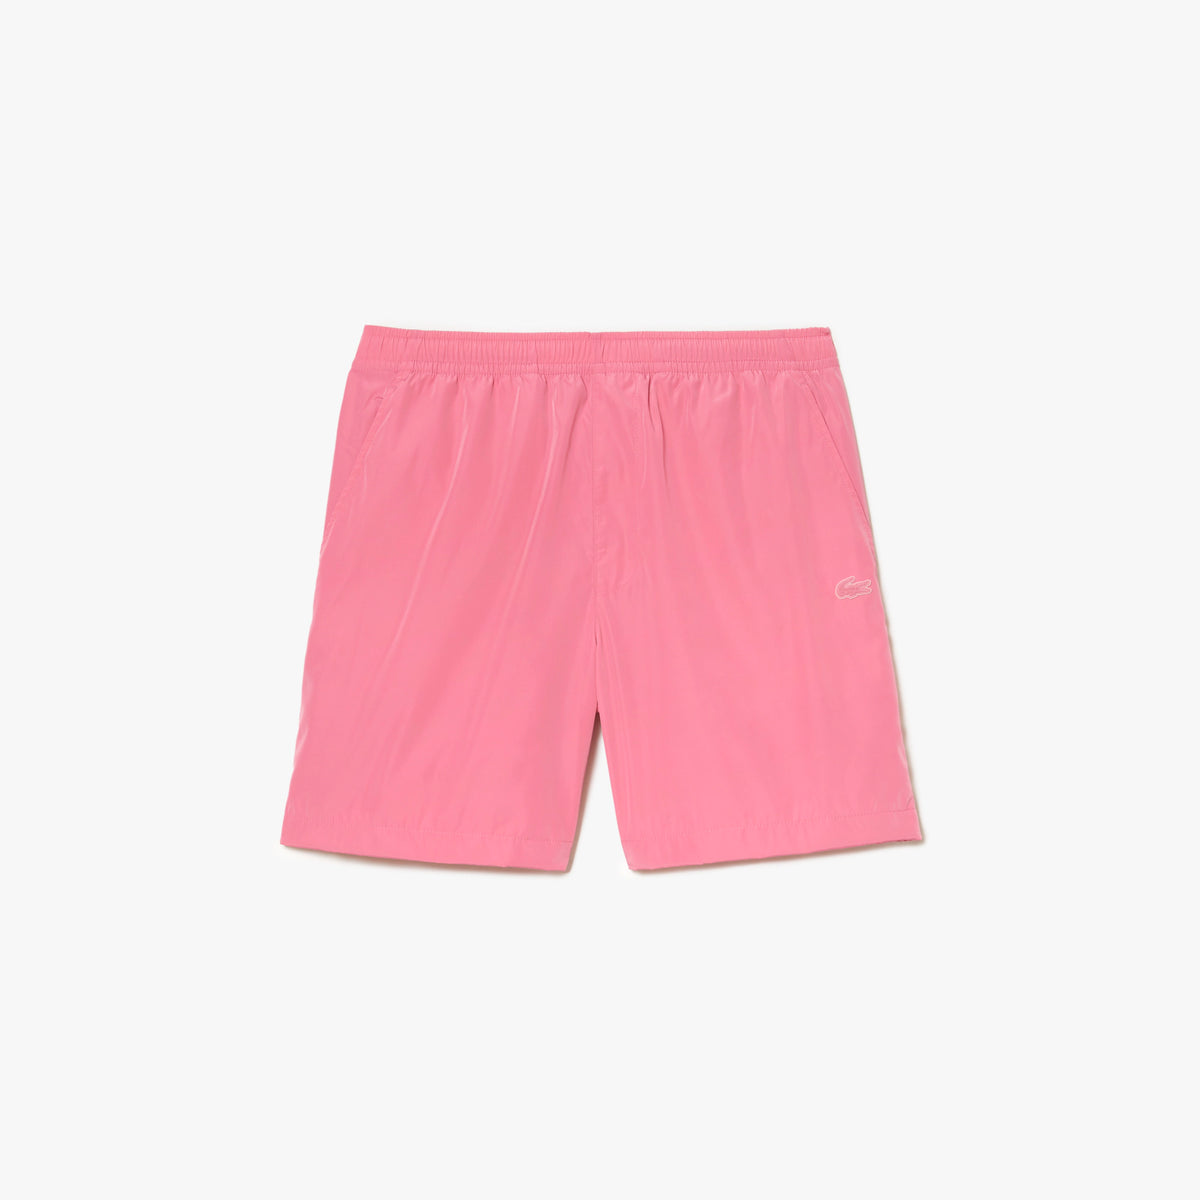 Lacoste - Waterproof Shorts - Pink